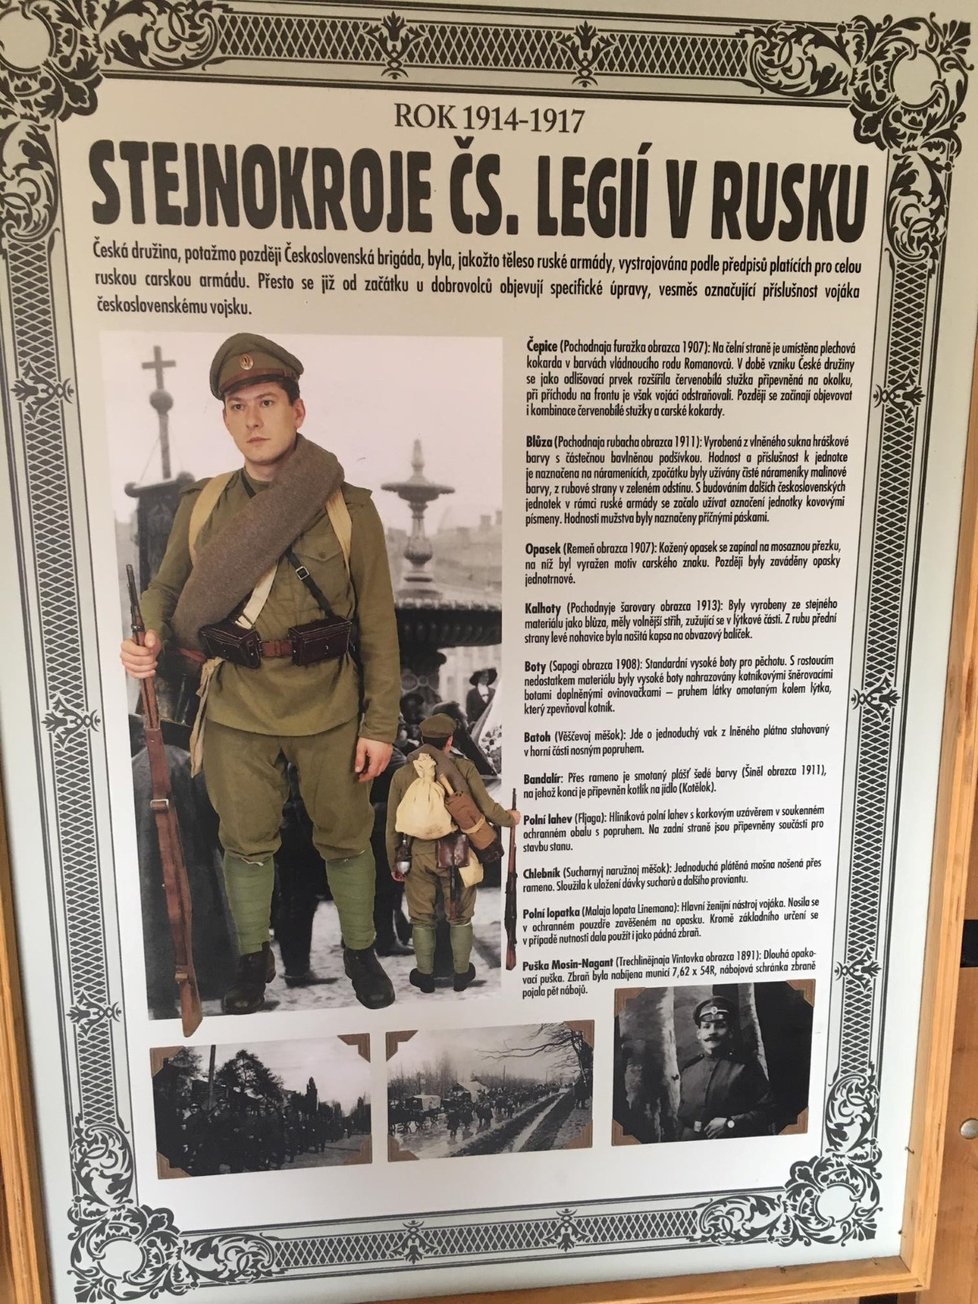 Dozvíte se mnoho zajímavostí ze života legionářů na ruské frontě.